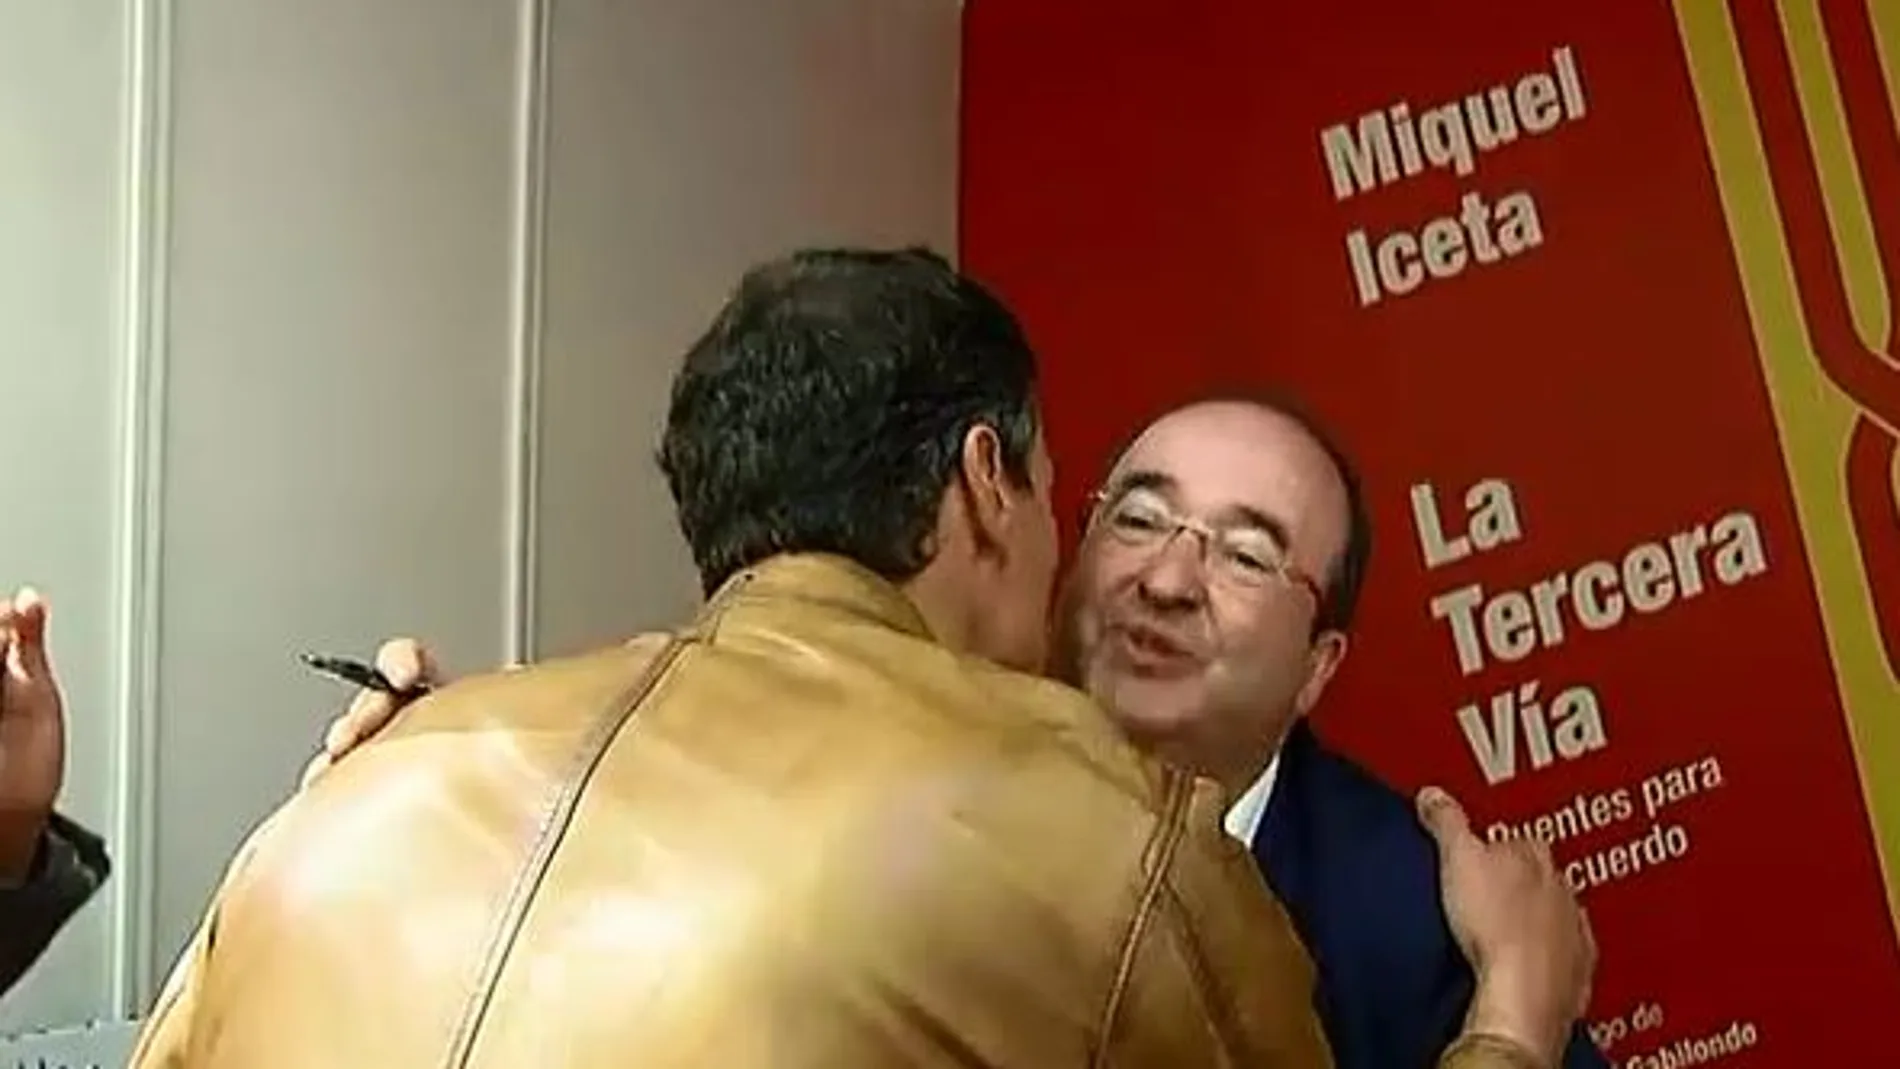 Pedro Sánchez saluda a Iceta, que le firmó su libro de "La Tercera Vía"